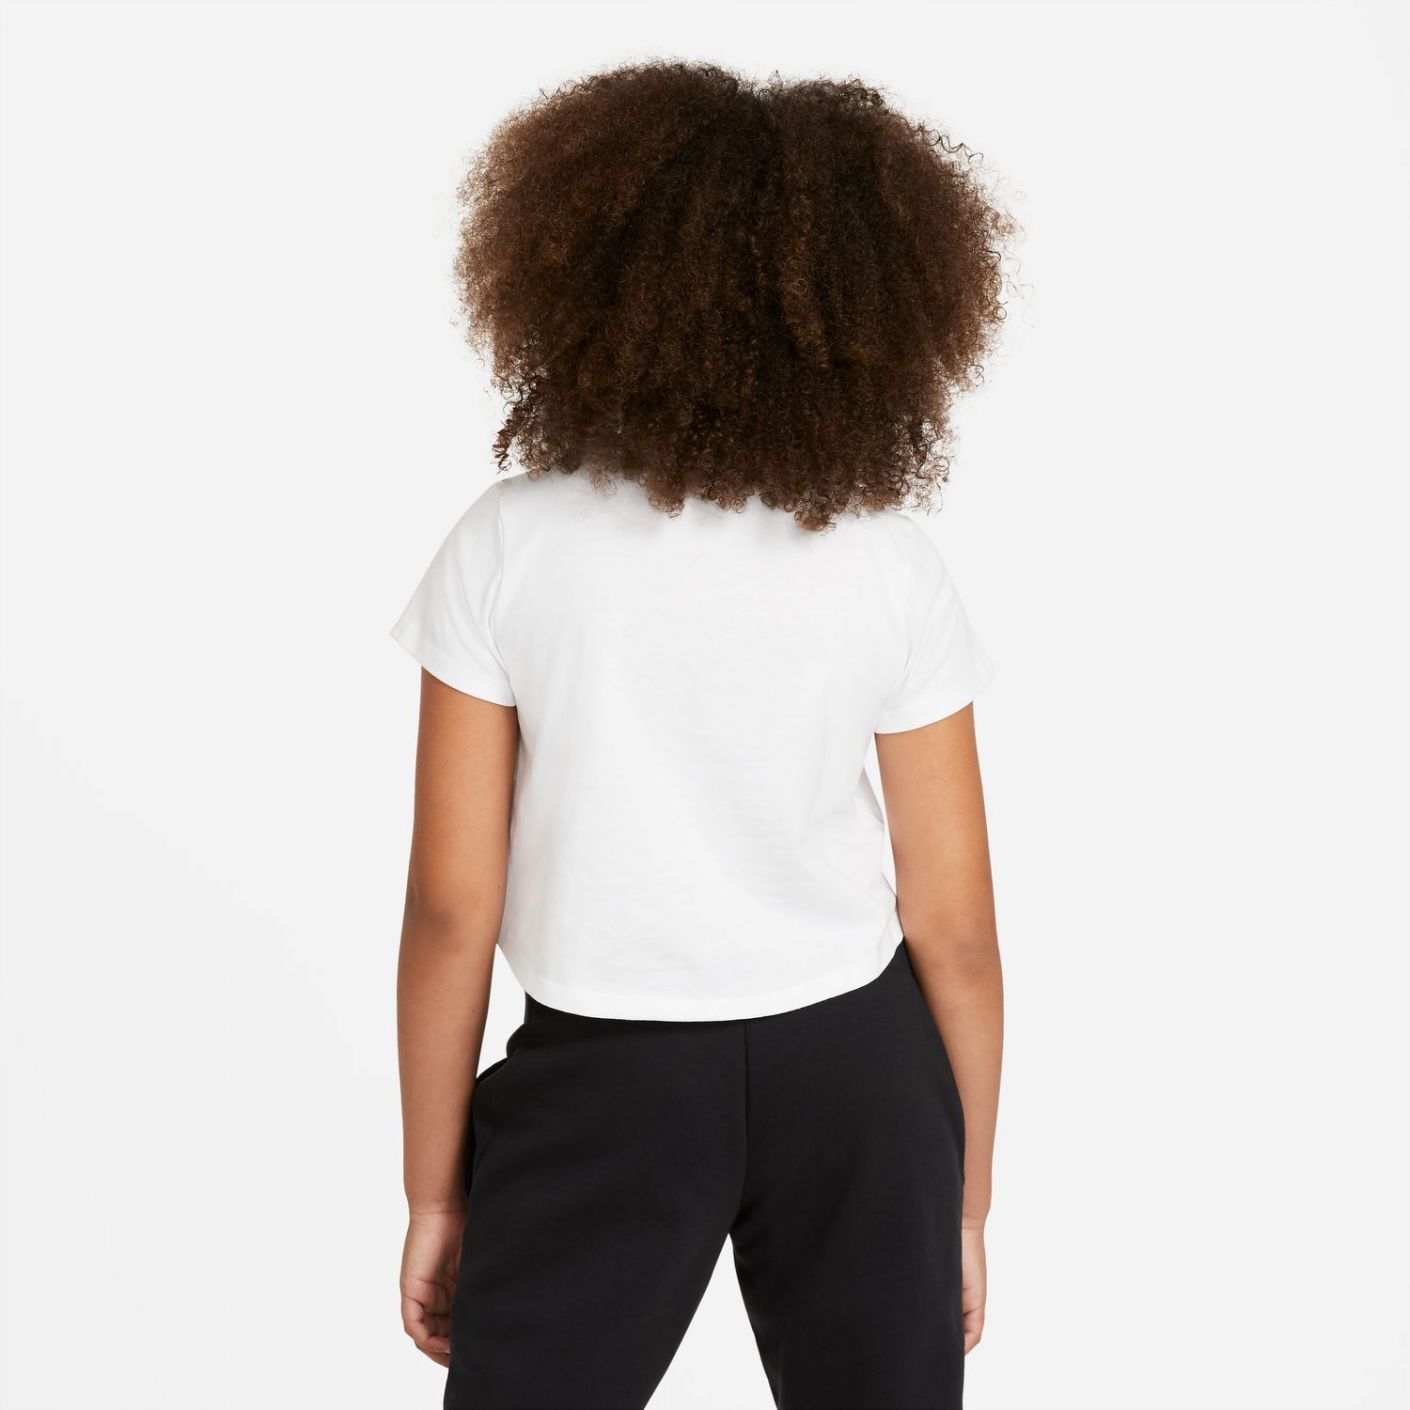 Nike T-Shirt Sportswear White/Black da Bambina